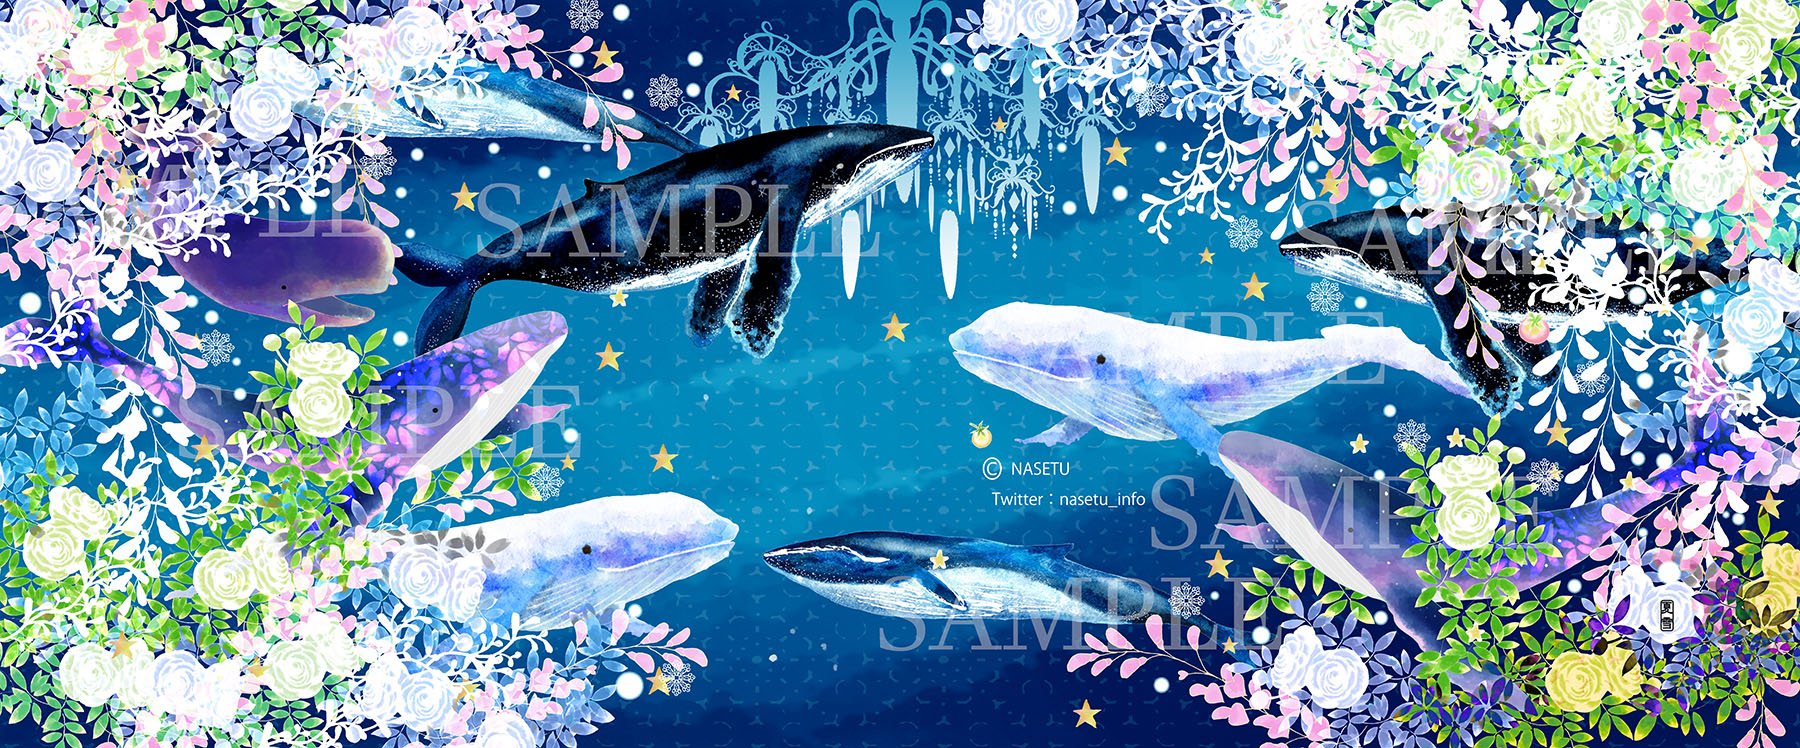 夏雪 なせつ 和と動植物イラストレーター 海の日 ということなので 新しいものではないですが大好きなクジラを描いたもの 手ぬぐいのデザインです クジラ イラスト T Co T4us1fp0du Twitter